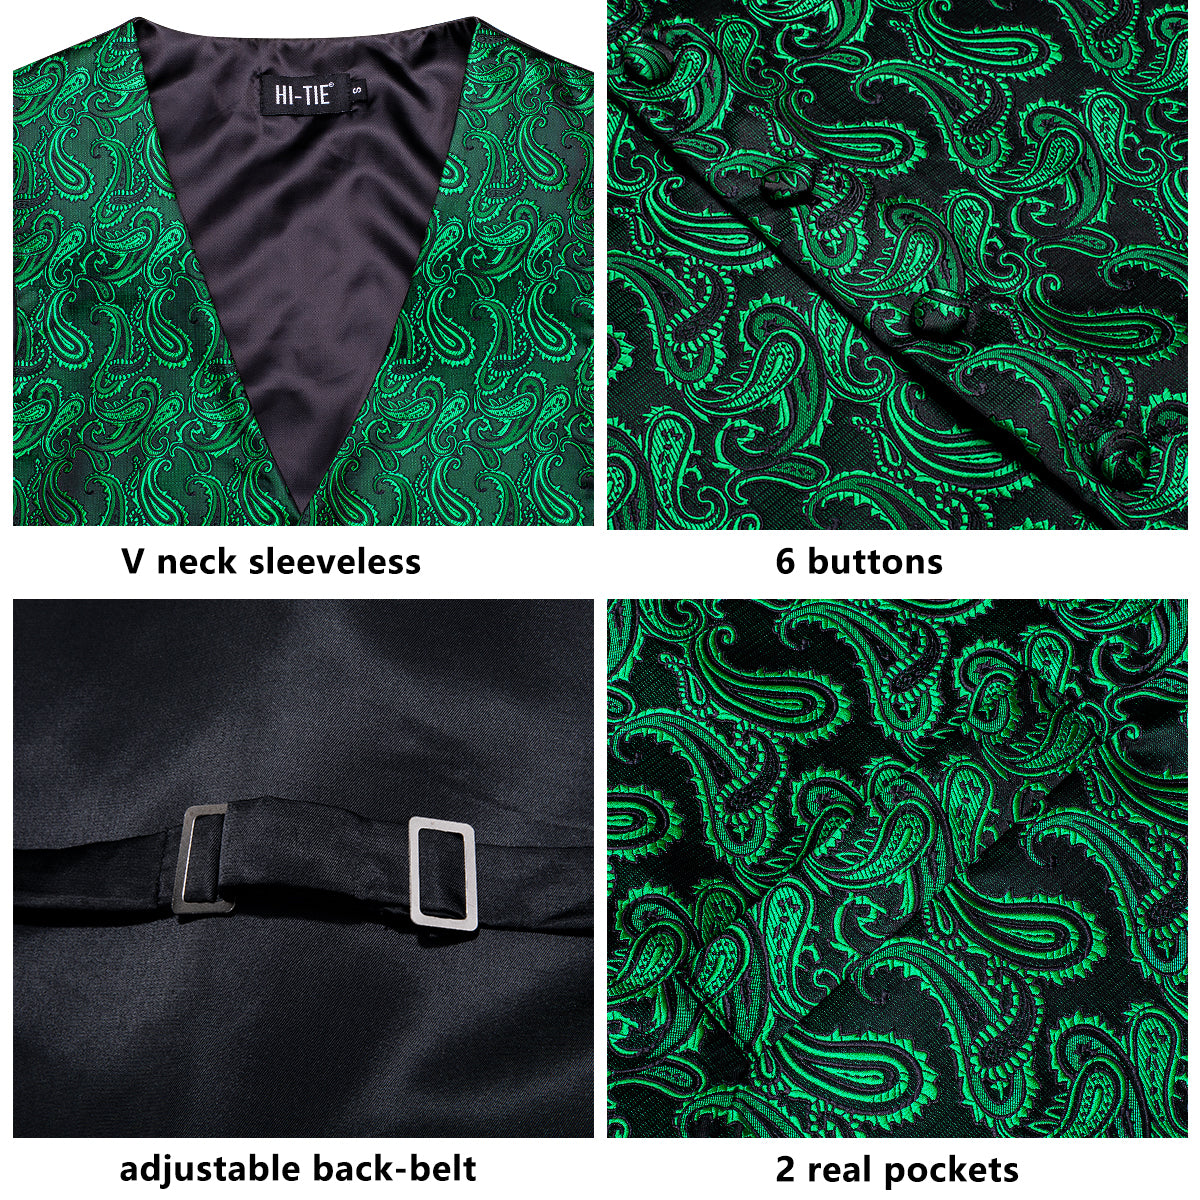 New Emerald Green Paisley Silk Men's Vest Hanky Cufflinks Tie Set Waistcoat Suit Set